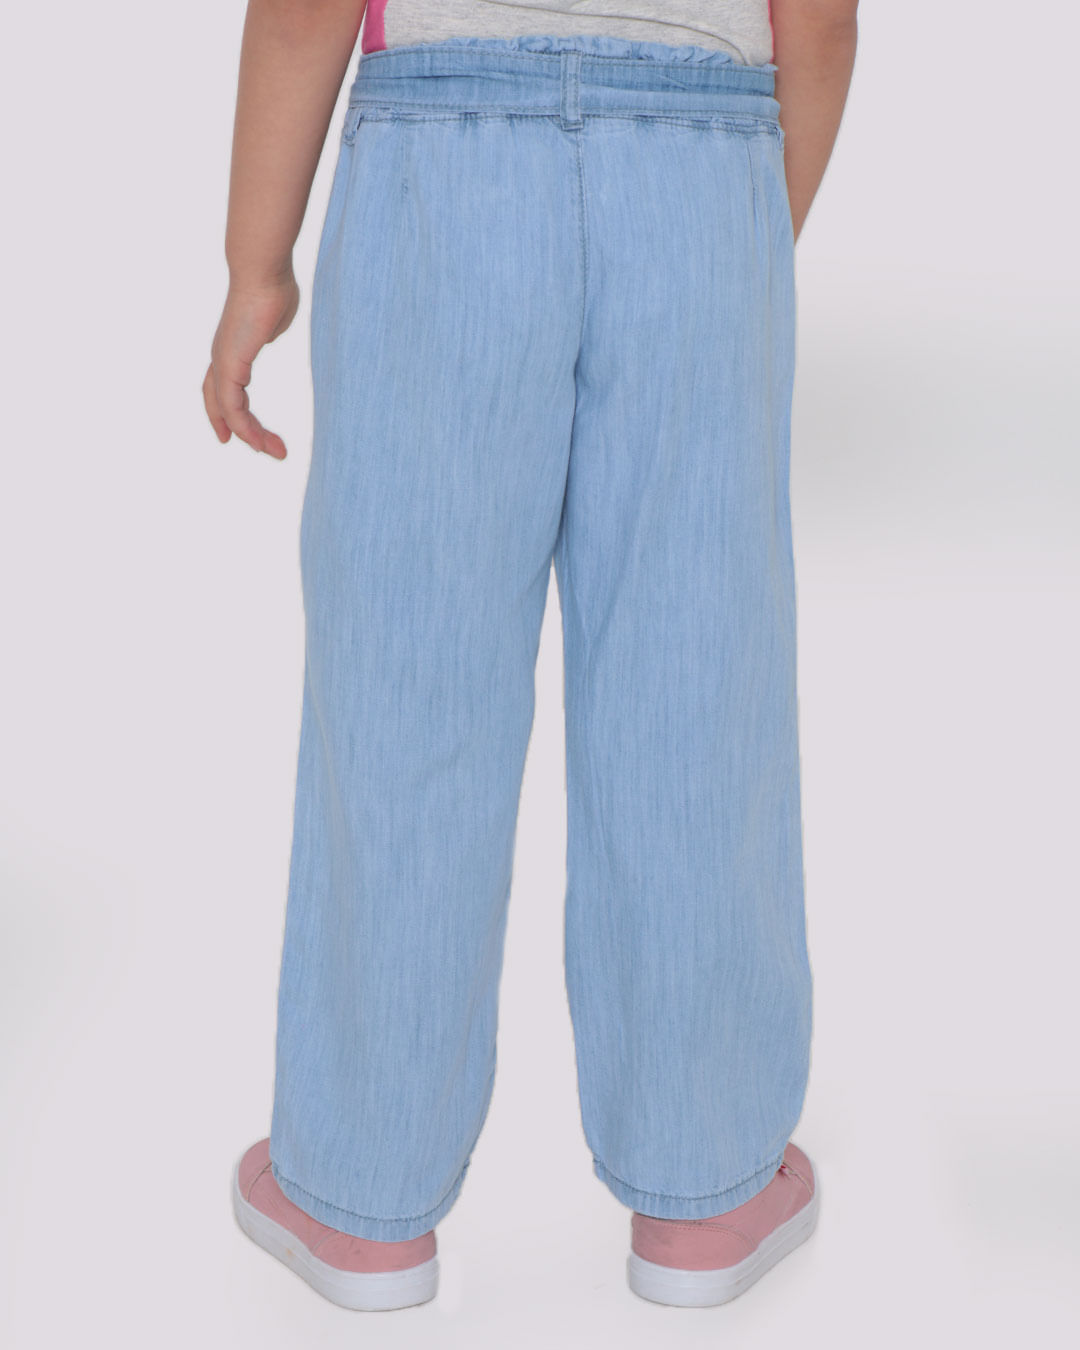 Calca-Jeans-Infantil-Faixa-Azul